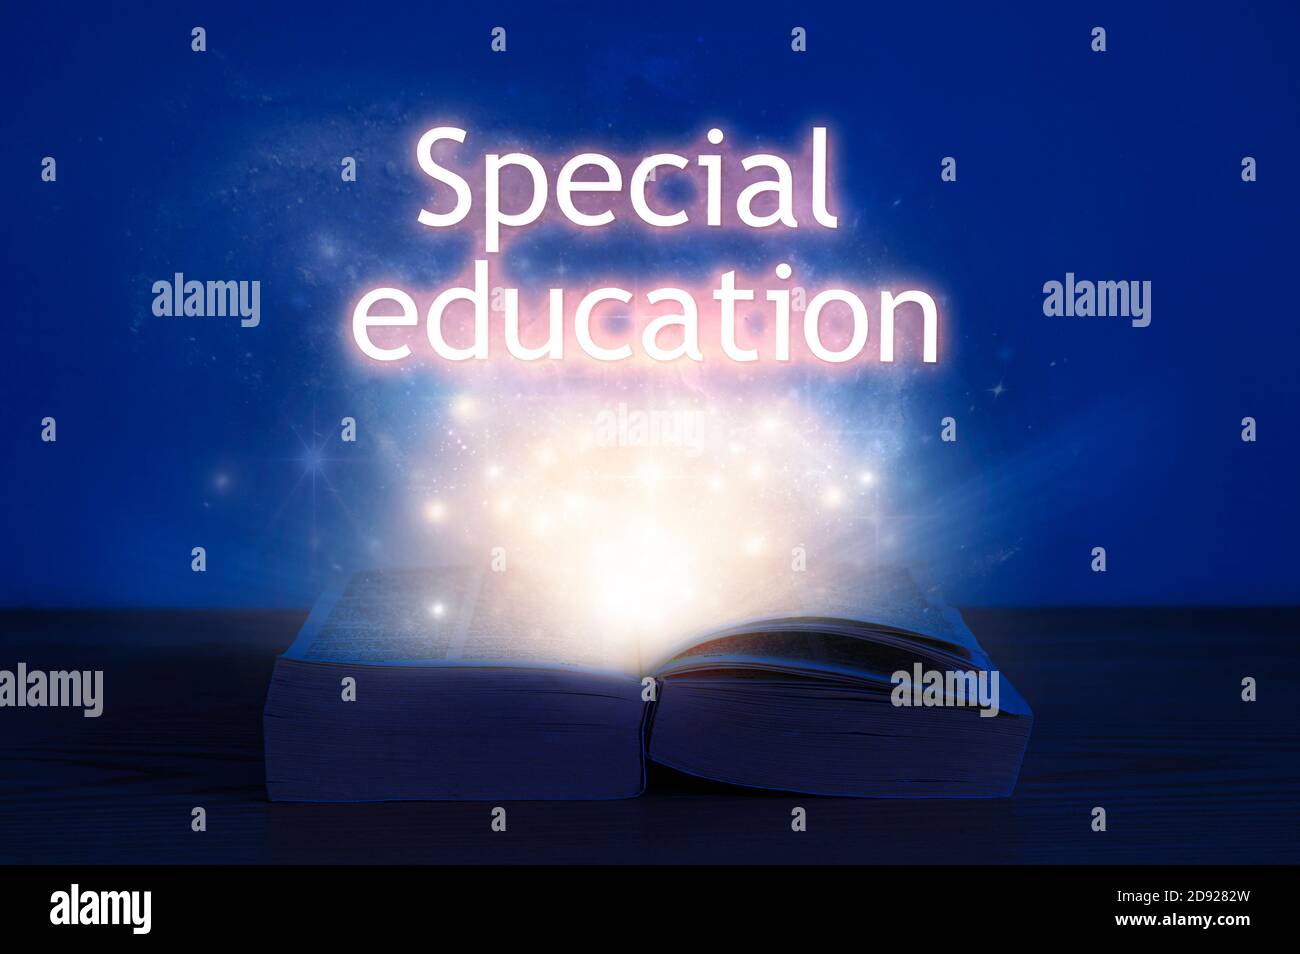 Offenes Buch mit spezieller Bildungsinschrift. Licht kommt aus dem offenen Buch mit Worten besondere Bildung. Stockfoto